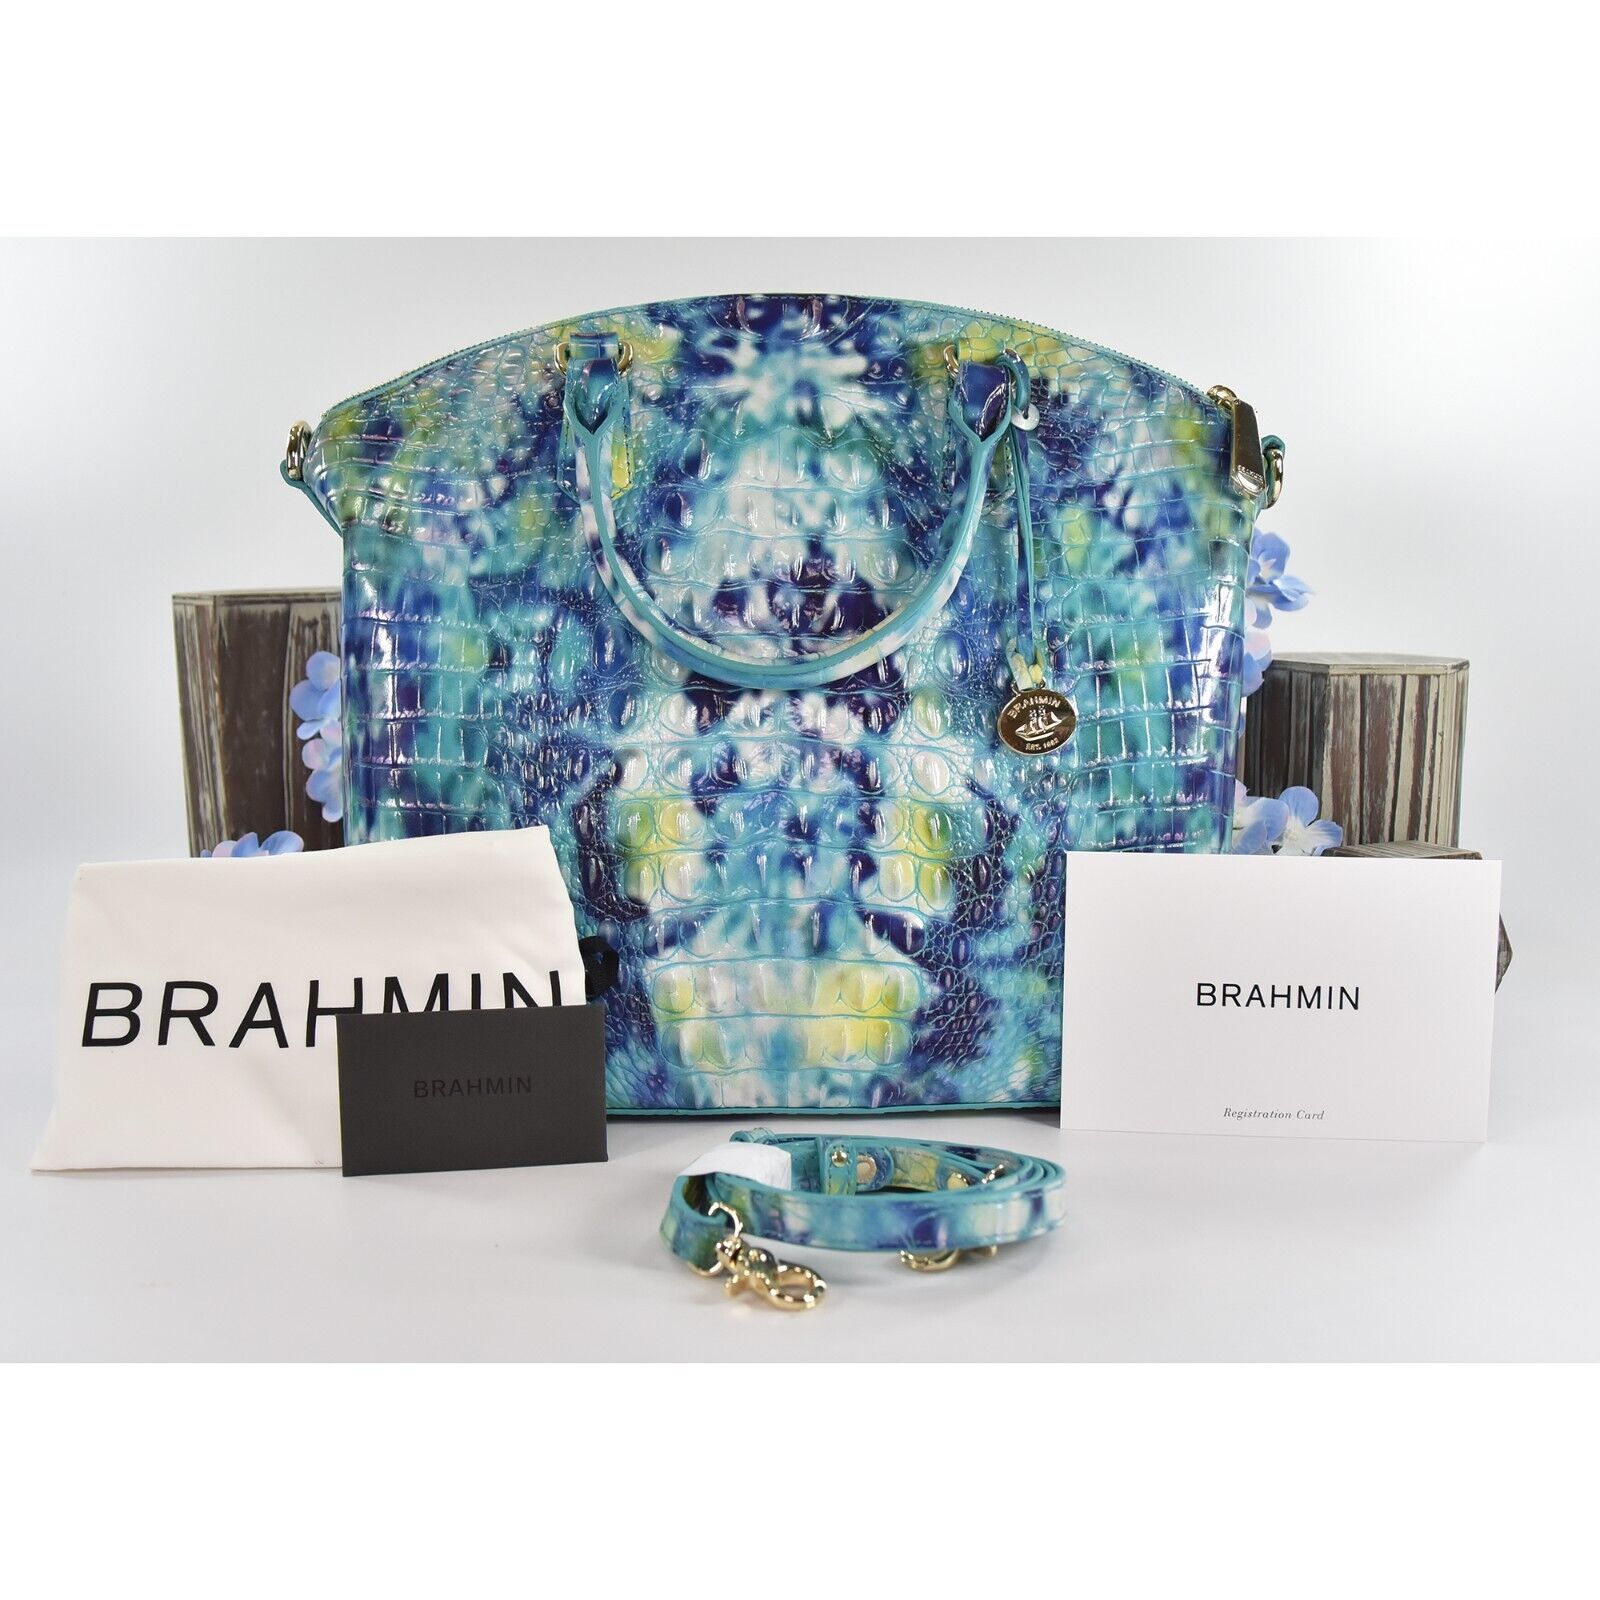 Brahmin Melbourne Collection Duxbury Satchel, Dusty Blue